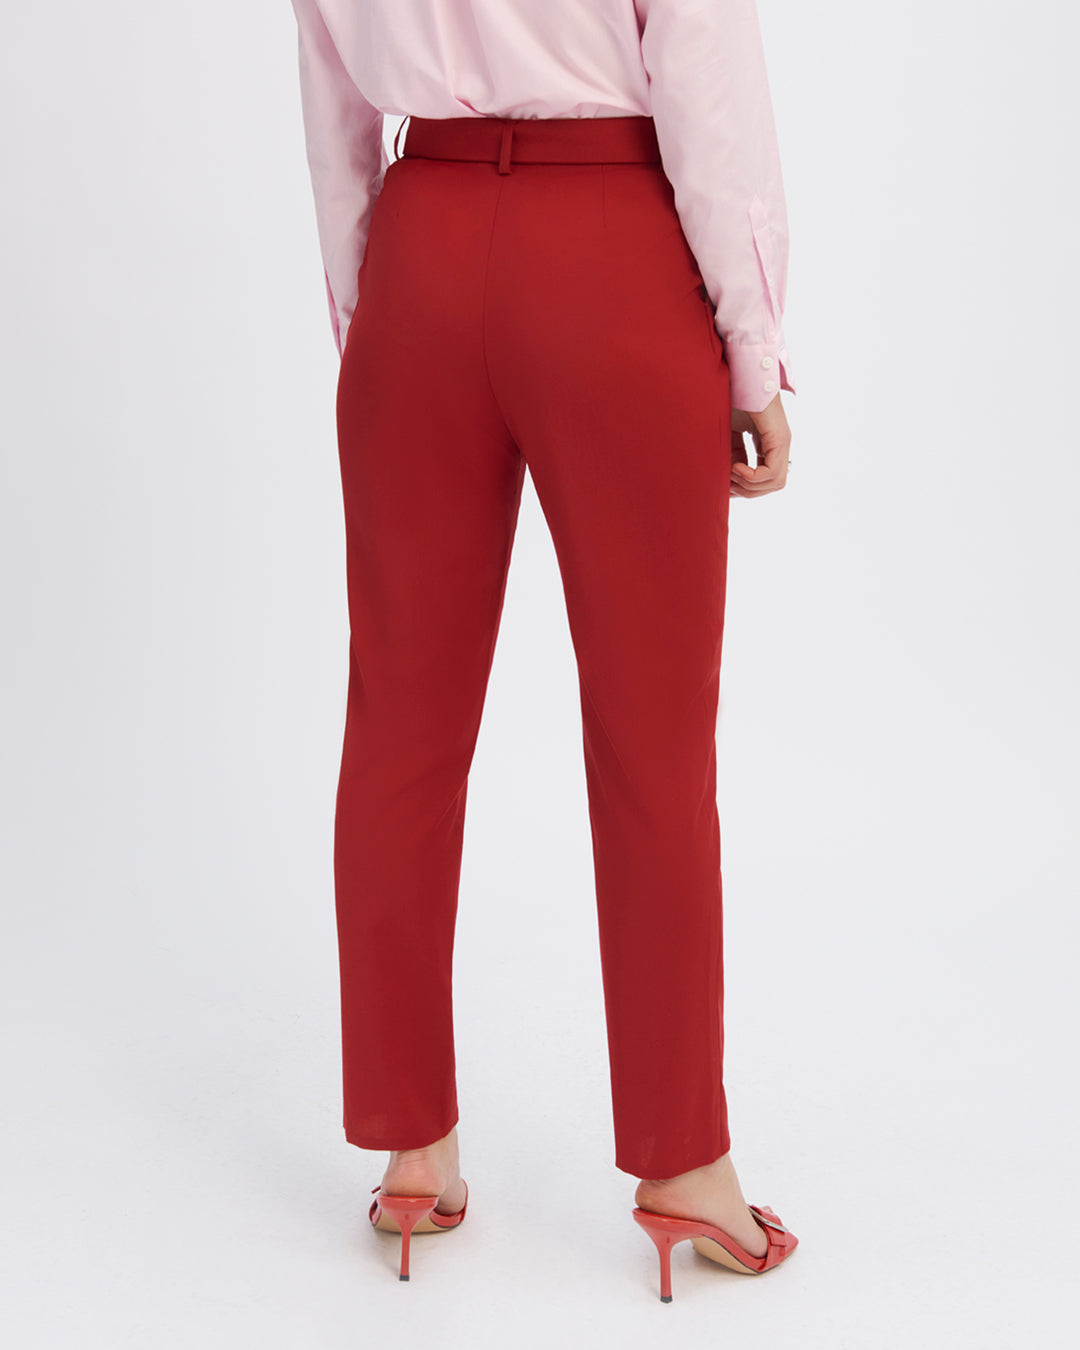 "Pantalon-tailleur-rouge-Coupe-7-8eme-taille-haute-Plis-sous-la-ceinture-Deux-poches-a-l-italienne-Ceinture-assortie-ton-sur-ton-17H10-tailleurs-pour-femme-paris-"